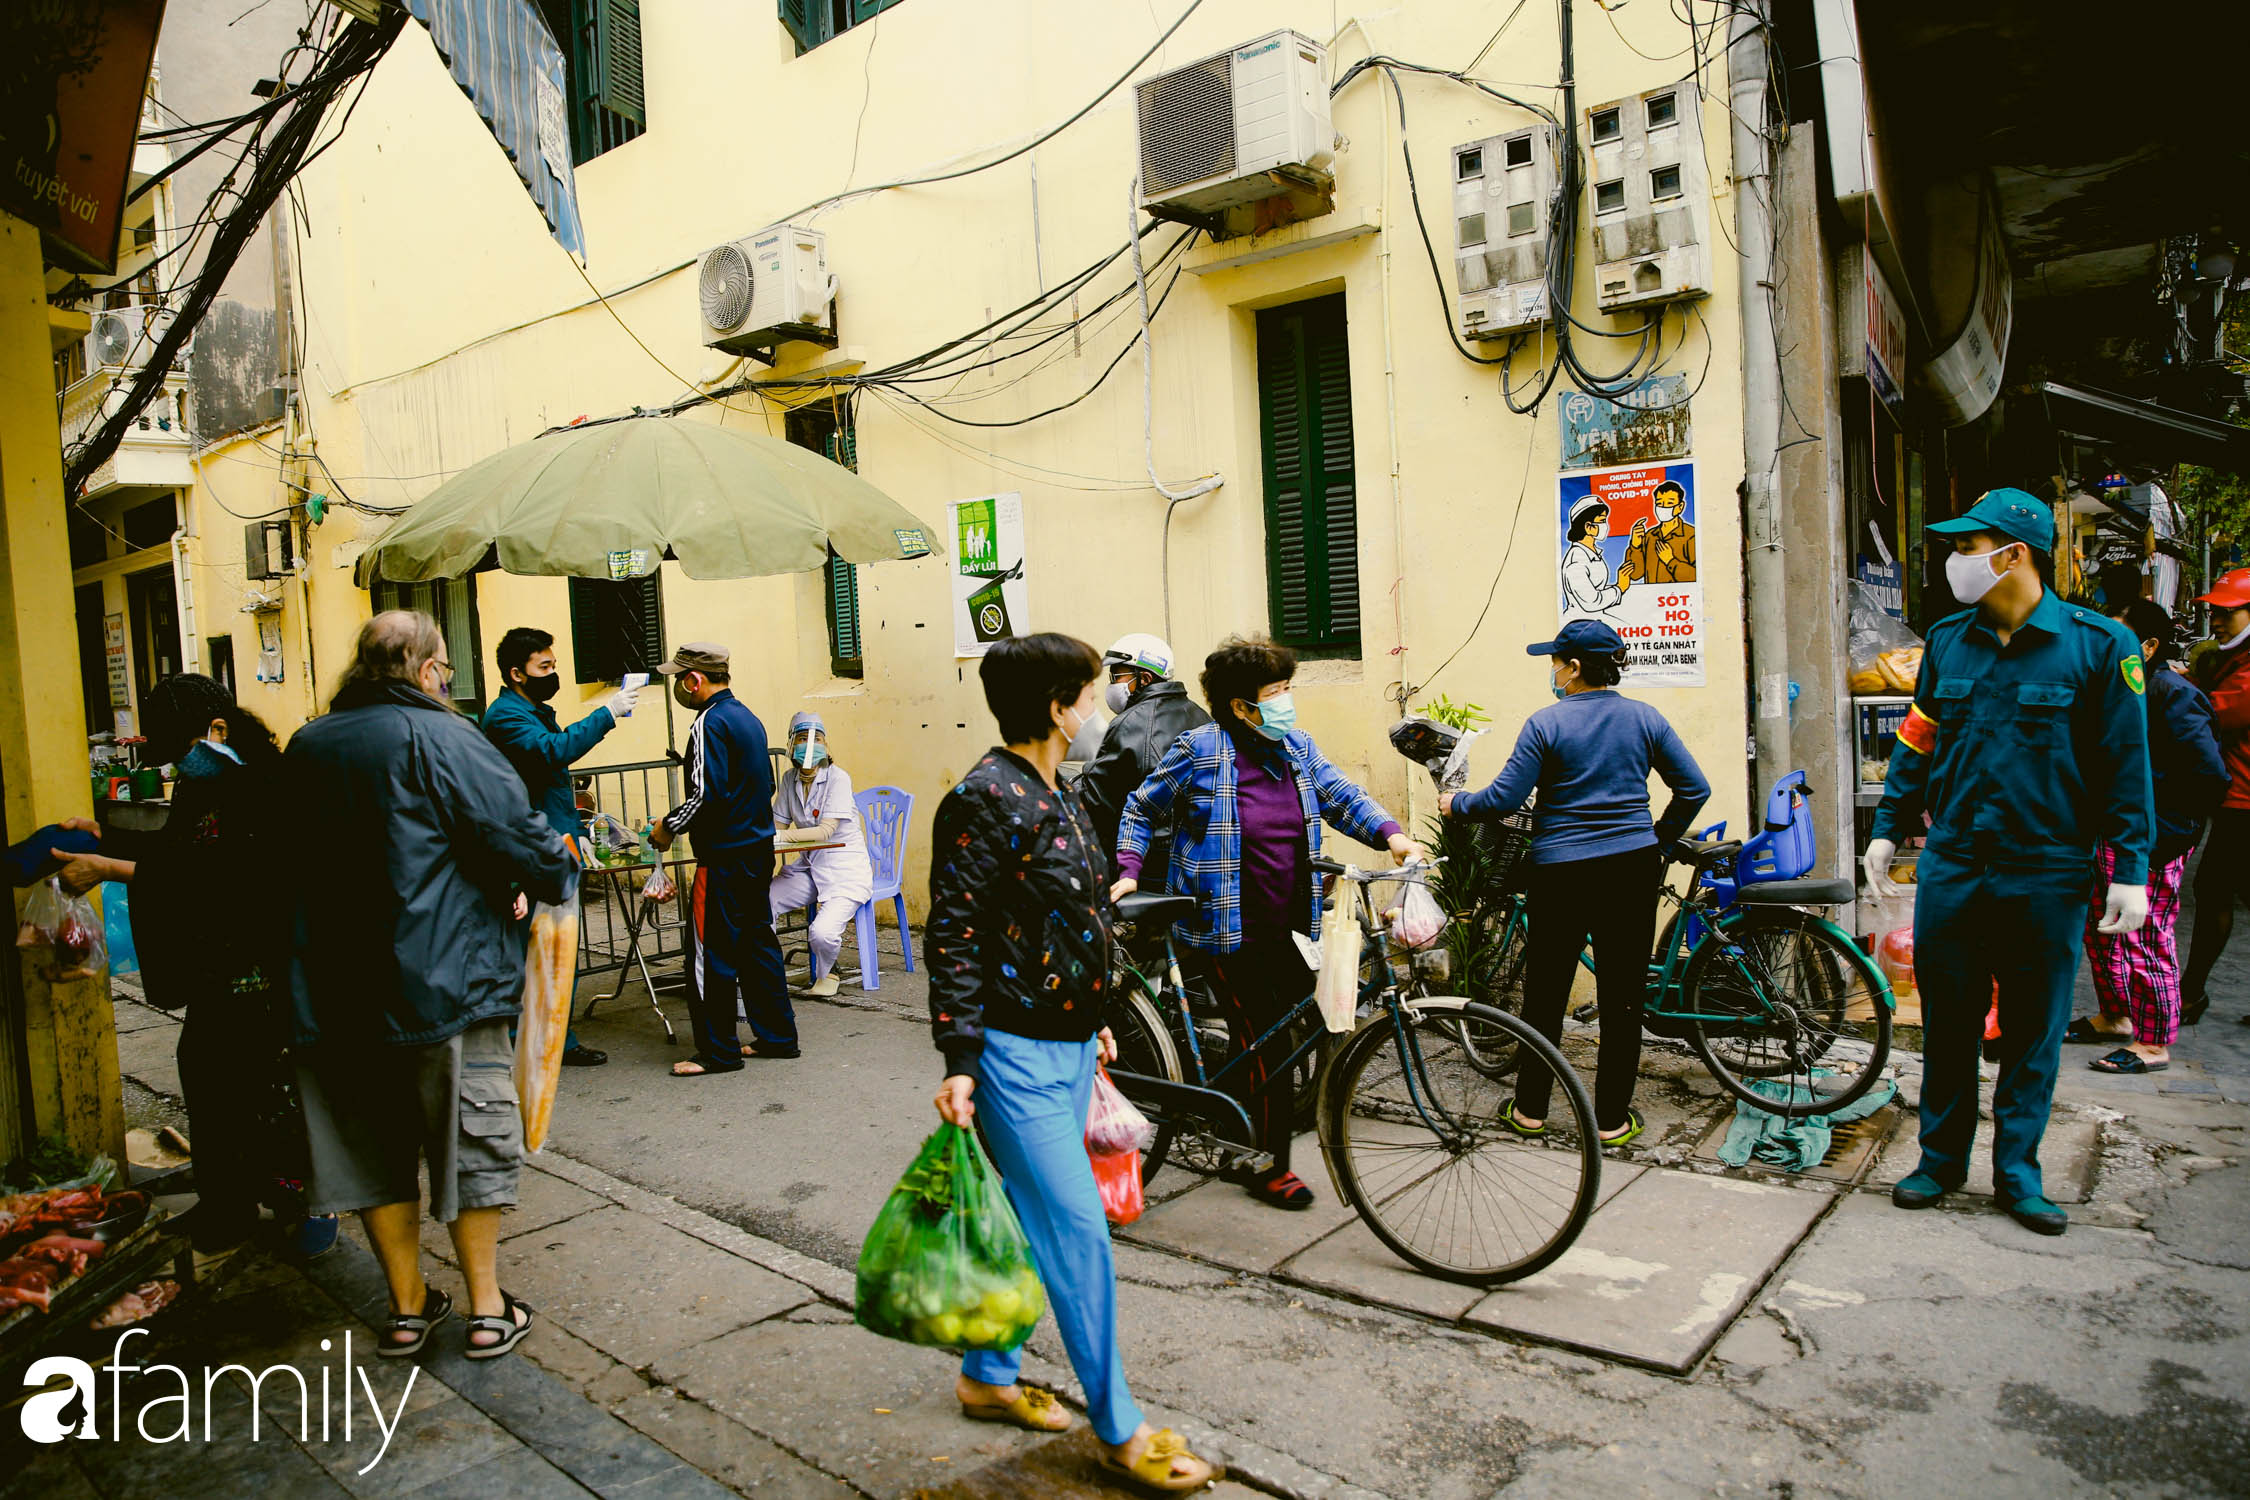 Khu chợ trong phố cổ Hà Nội kẻ vạch giãn cách 2 mét, chỉ bán hàng cho những người chịu đo thân nhiệt, đeo khẩu trang - Ảnh 1.